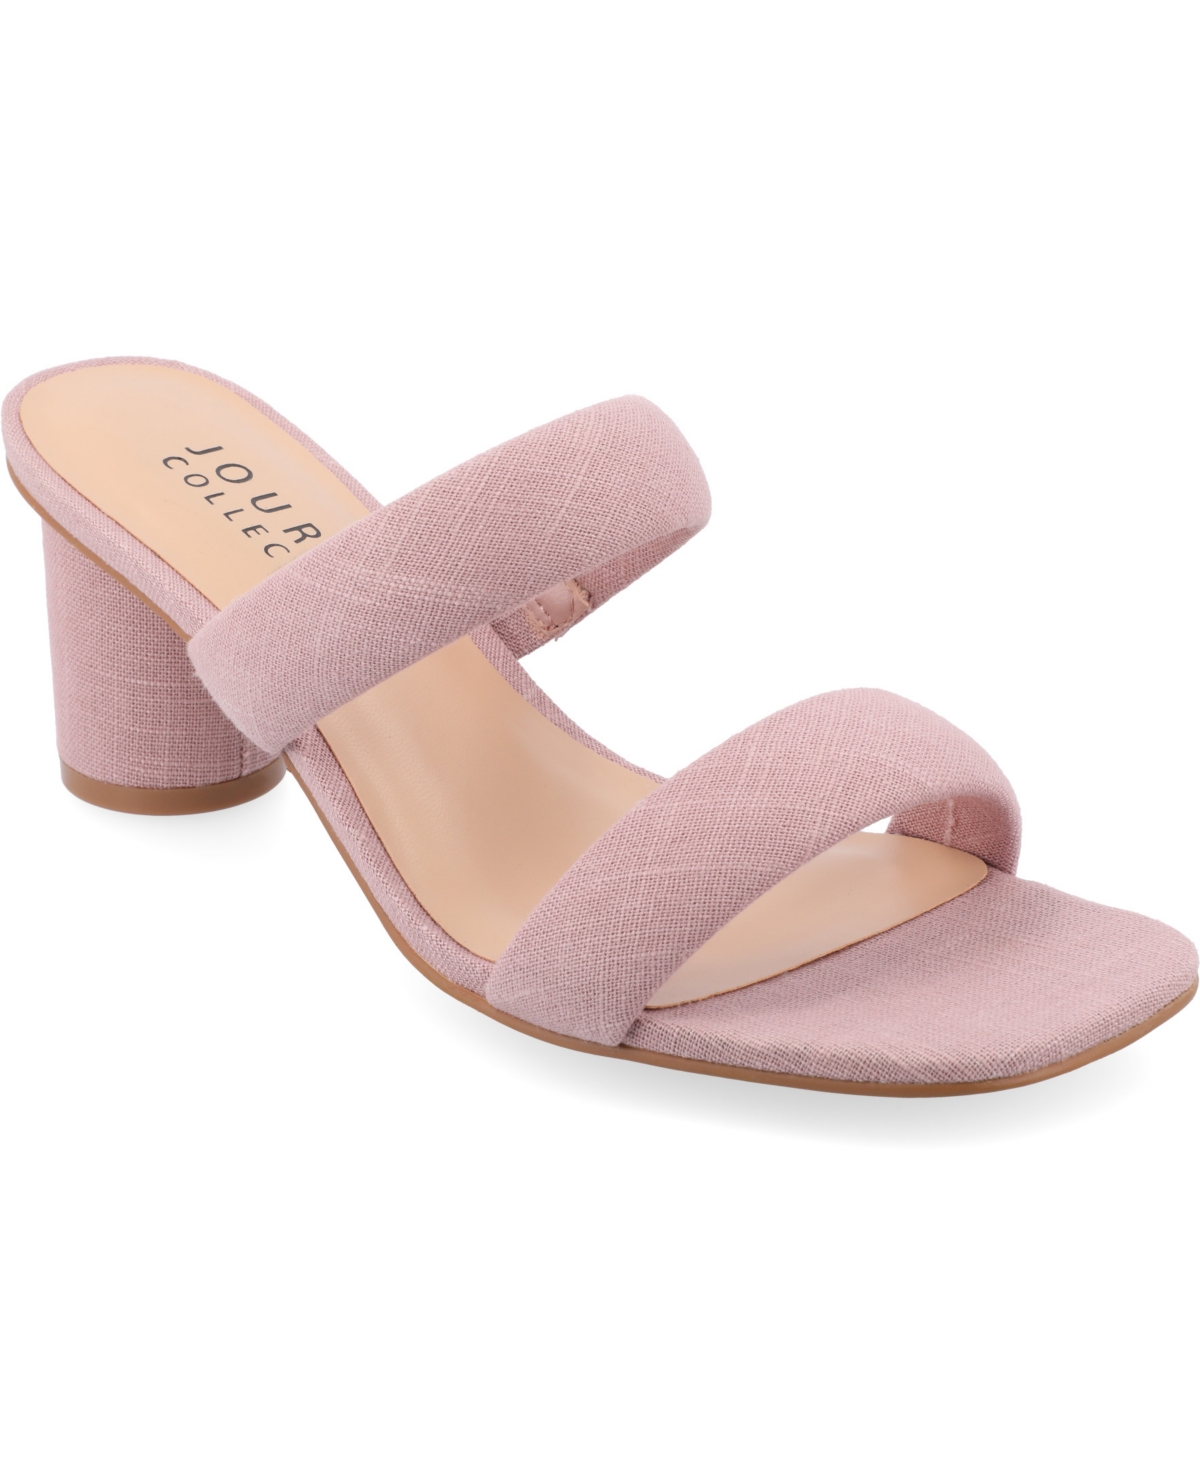 Shop Journee Collection Women's Aniko Tru Comfort Double Strap Block Heel Sandals In Blush